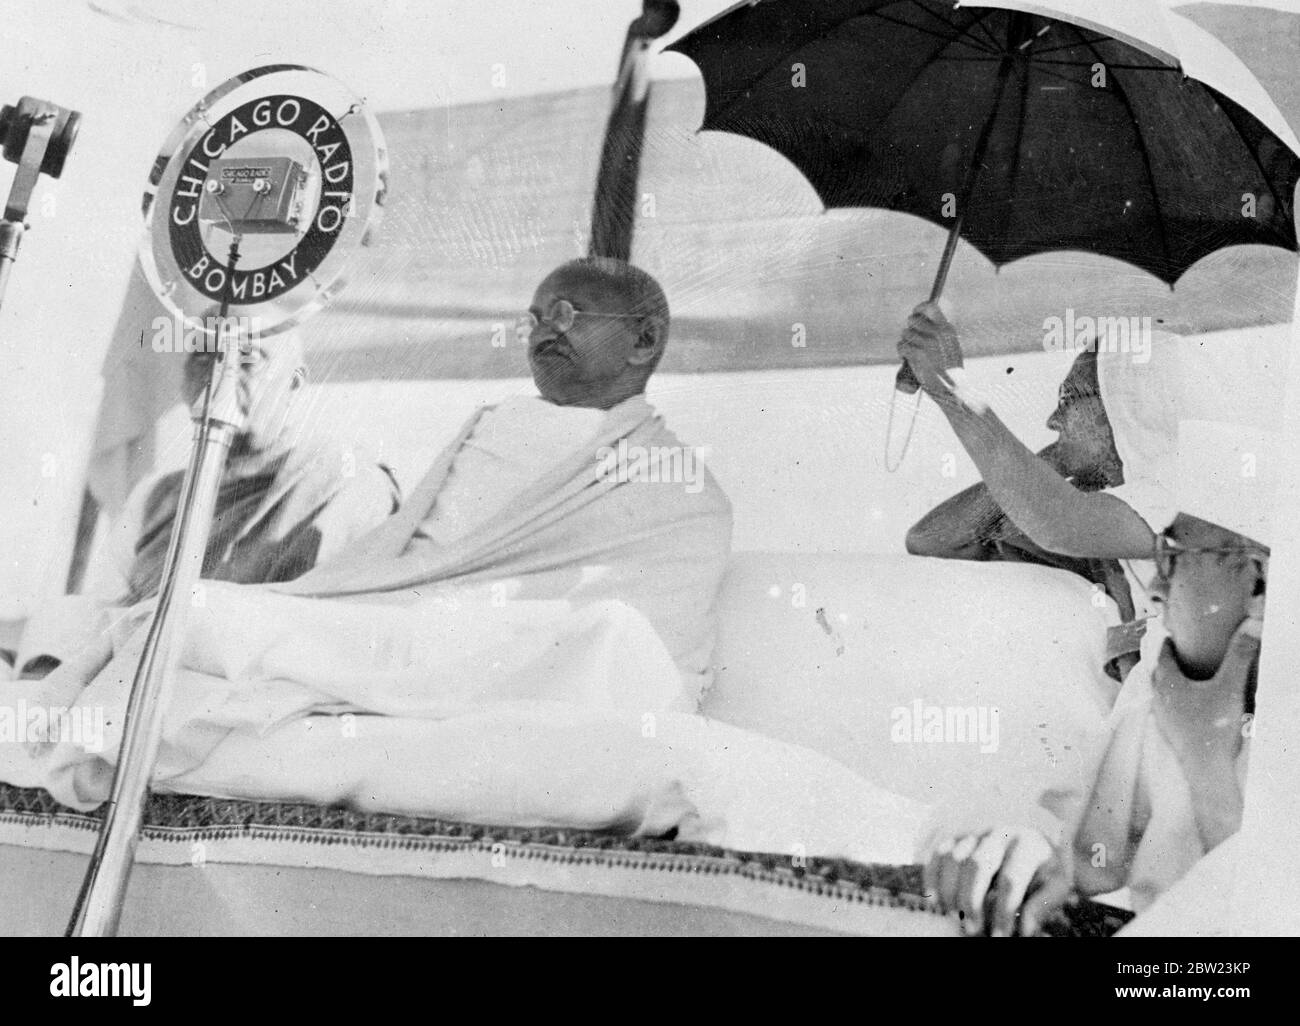 Mahatma Gandhi kehrt in die politische Arena zurück. Mahatma Gandhi, der wieder eine prominente Rolle in indischen politischen Angelegenheiten nimmt, eröffnete die All India Swadesi Ausstellung im Vithalnager, Haripura, wo die 51. Jährliche Sitzung des indischen Nationalkongresses stattfindet. Der Arbeitsausschuss des Kongresses hat eine von Herrn Gandhi entworfene Resolution angenommen, in der er erklärt, dass der Kongress die Provinzministerien nicht anweist, zurückzutreten, und keine Krise mit Bedrohungen für das Prinzip der Gewaltlosigkeit herbeiführen will. Indien befindet sich in der Krise der Neuen Konstitutio Stockfoto